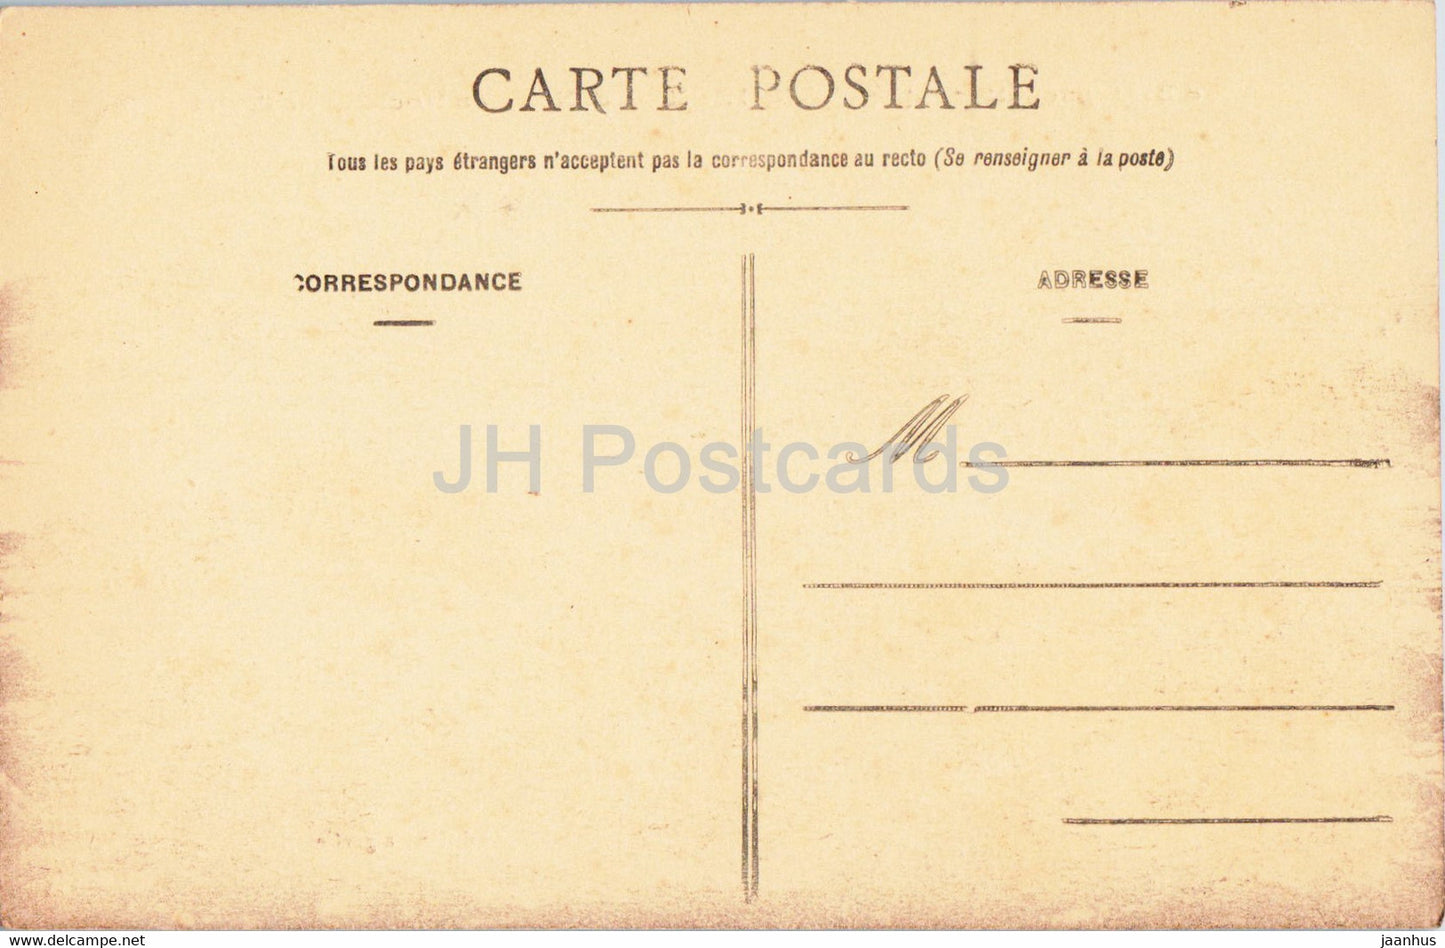 Lancieux - Les Rochers de l'Islet - alte Postkarte - Frankreich - unbenutzt